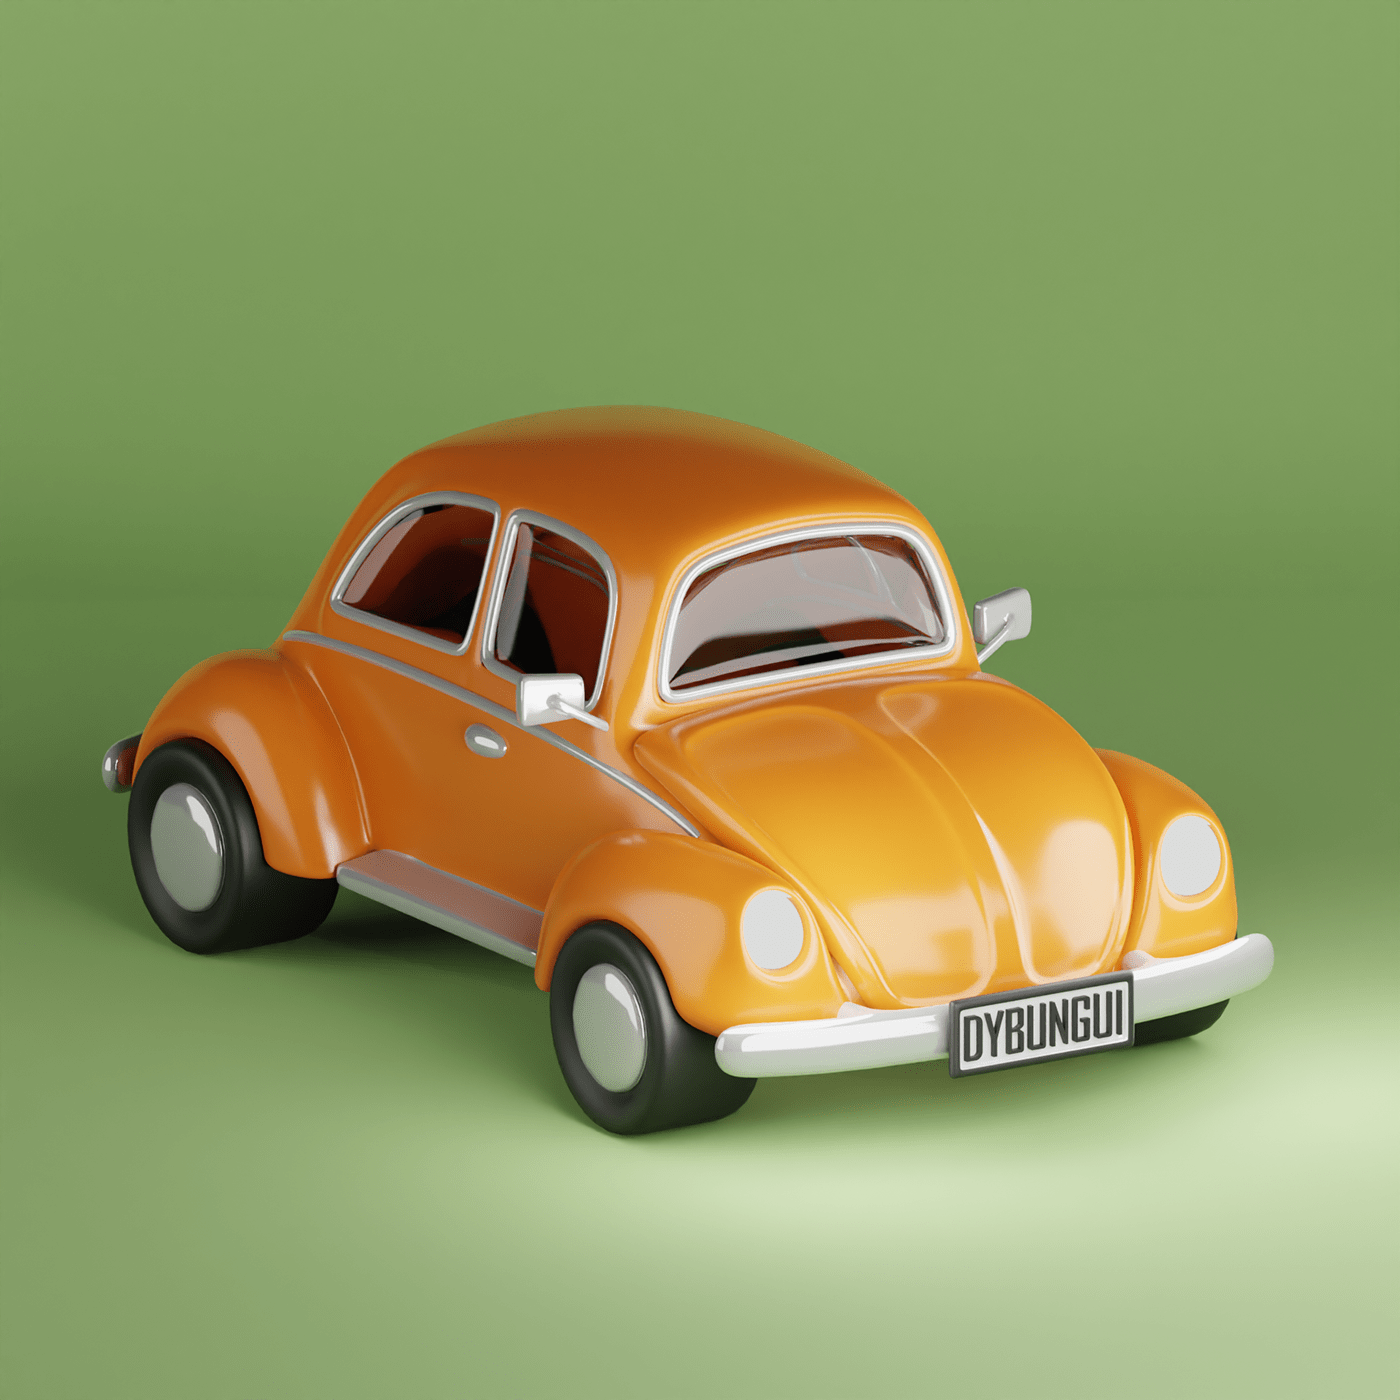 beetle volkswagen 3D blender b3d blender3d 3d modeling Render volks